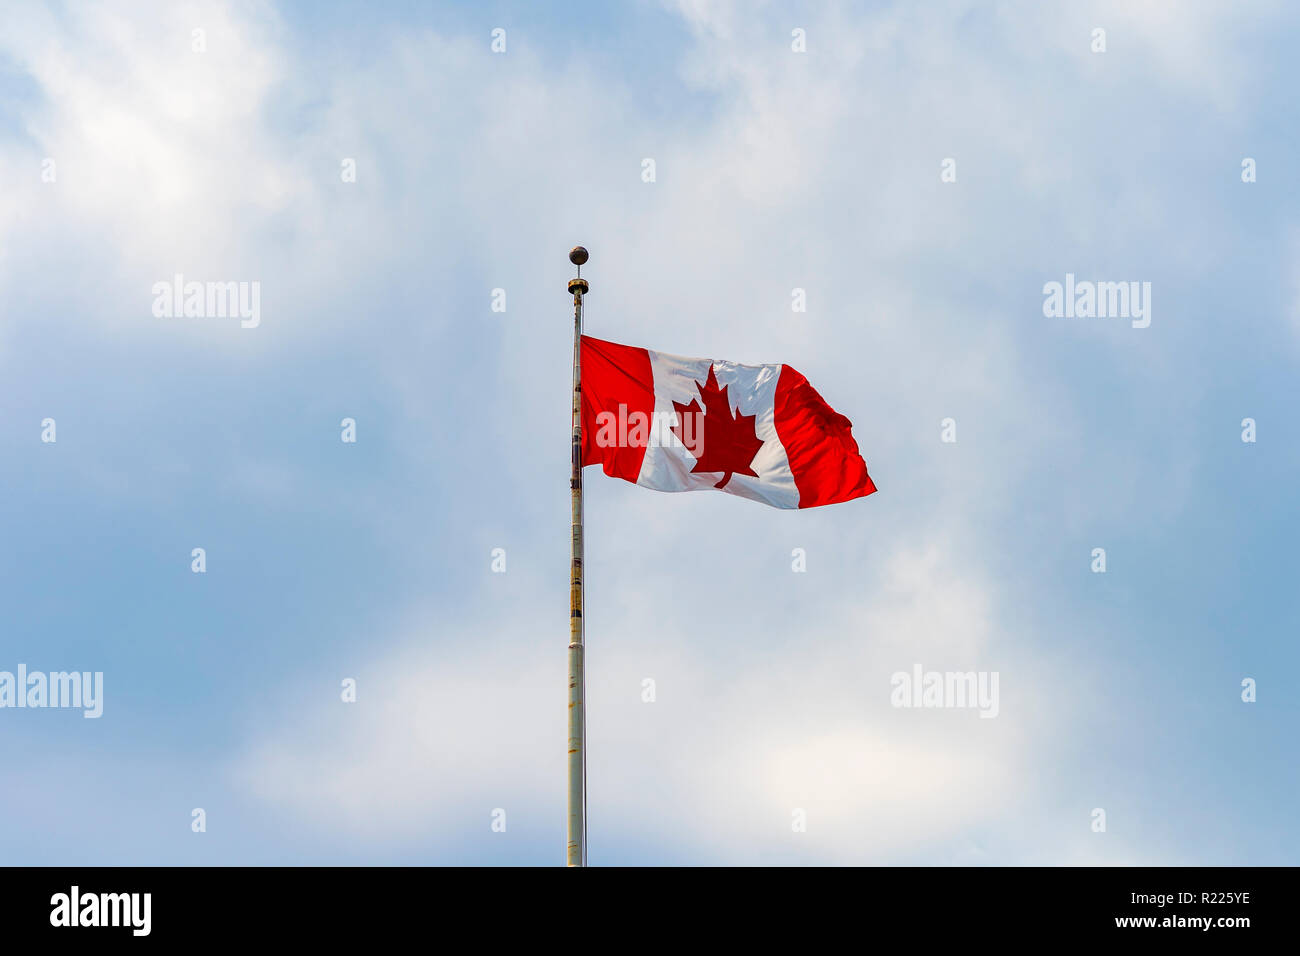 Drapeau du Canada avec la traditionnelle feuille d'érable forme dans le ciel bleu de Toronto, Québec, Canada Banque D'Images